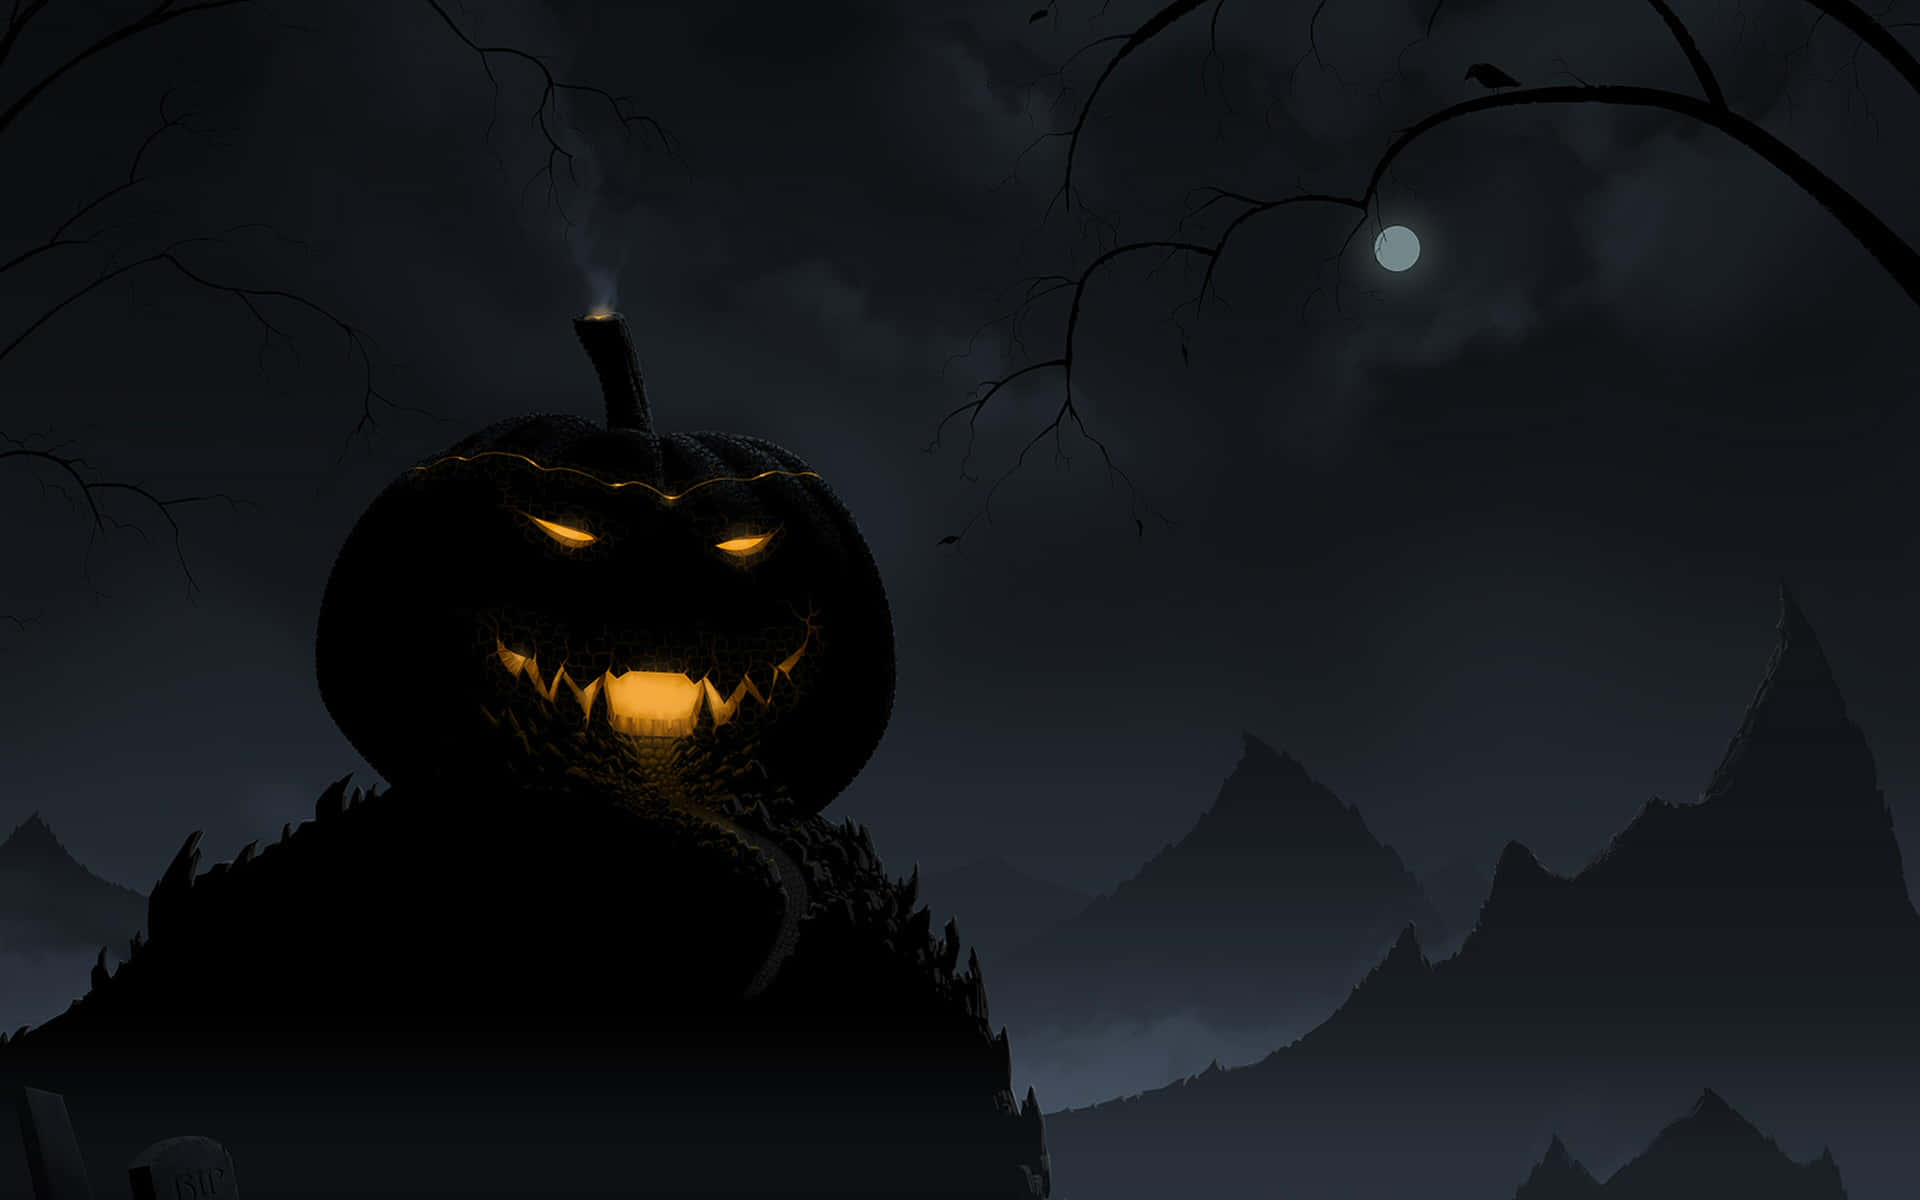 Bu!visa Din Läskiga Sida Med En Festlig Halloween-profilbild!